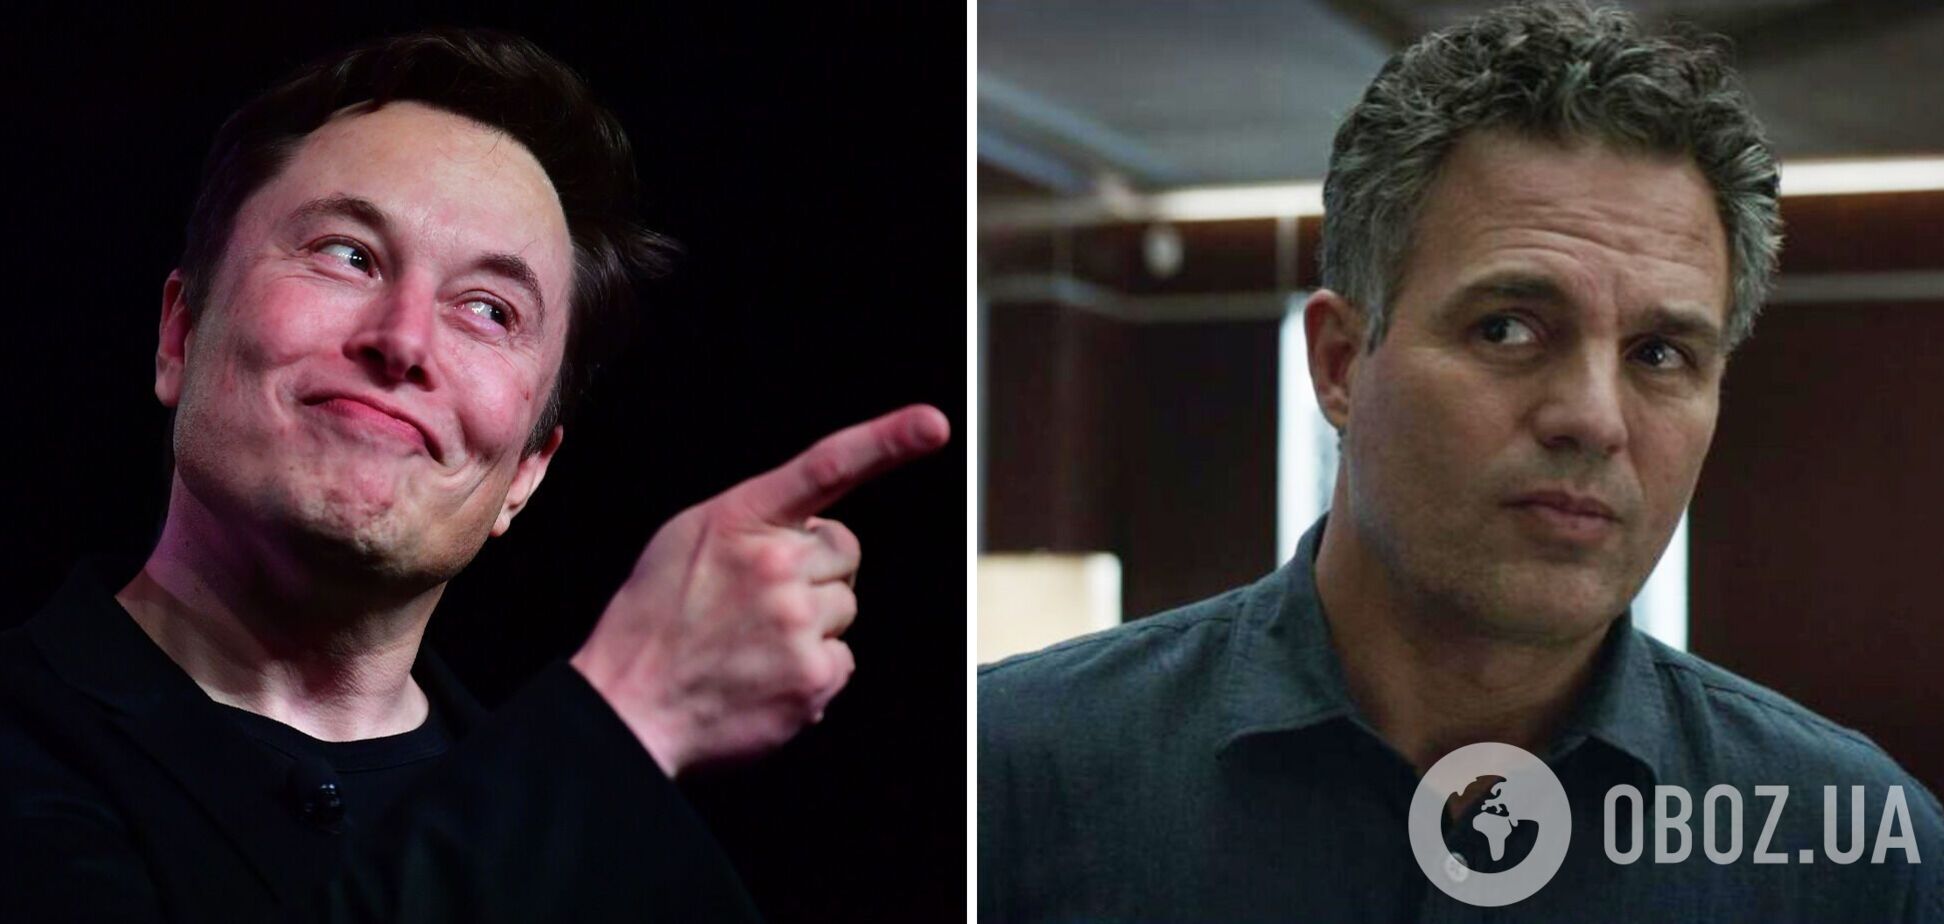 Звезда 'Мстителей' посмеялся над скандальным предложением Илона Маска по поводу 'российско-украинского мира'